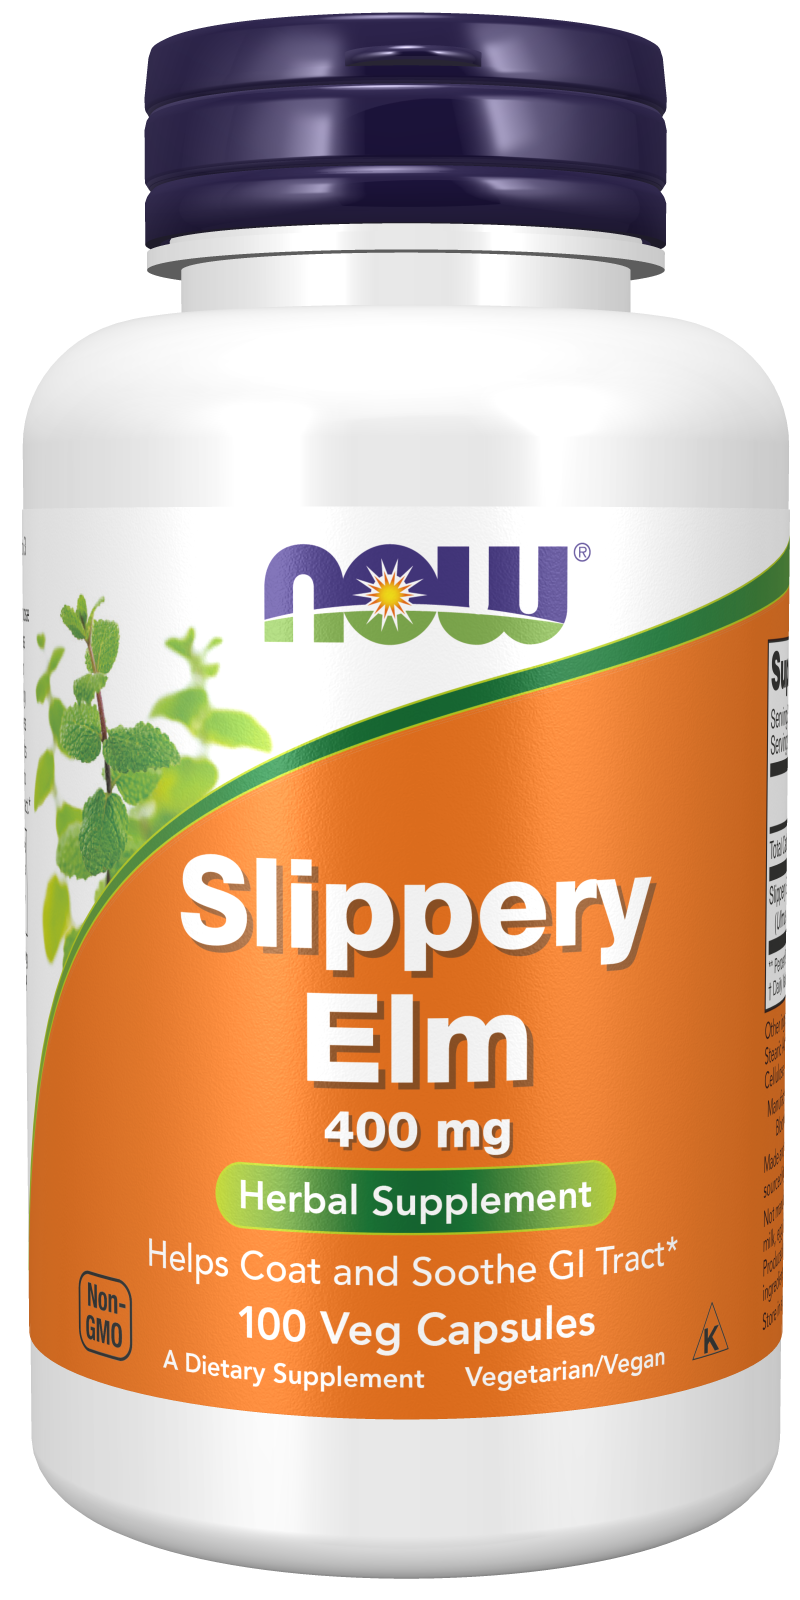 Slippery Elm 400 mg - 100 Veg Capsules Bottle Front